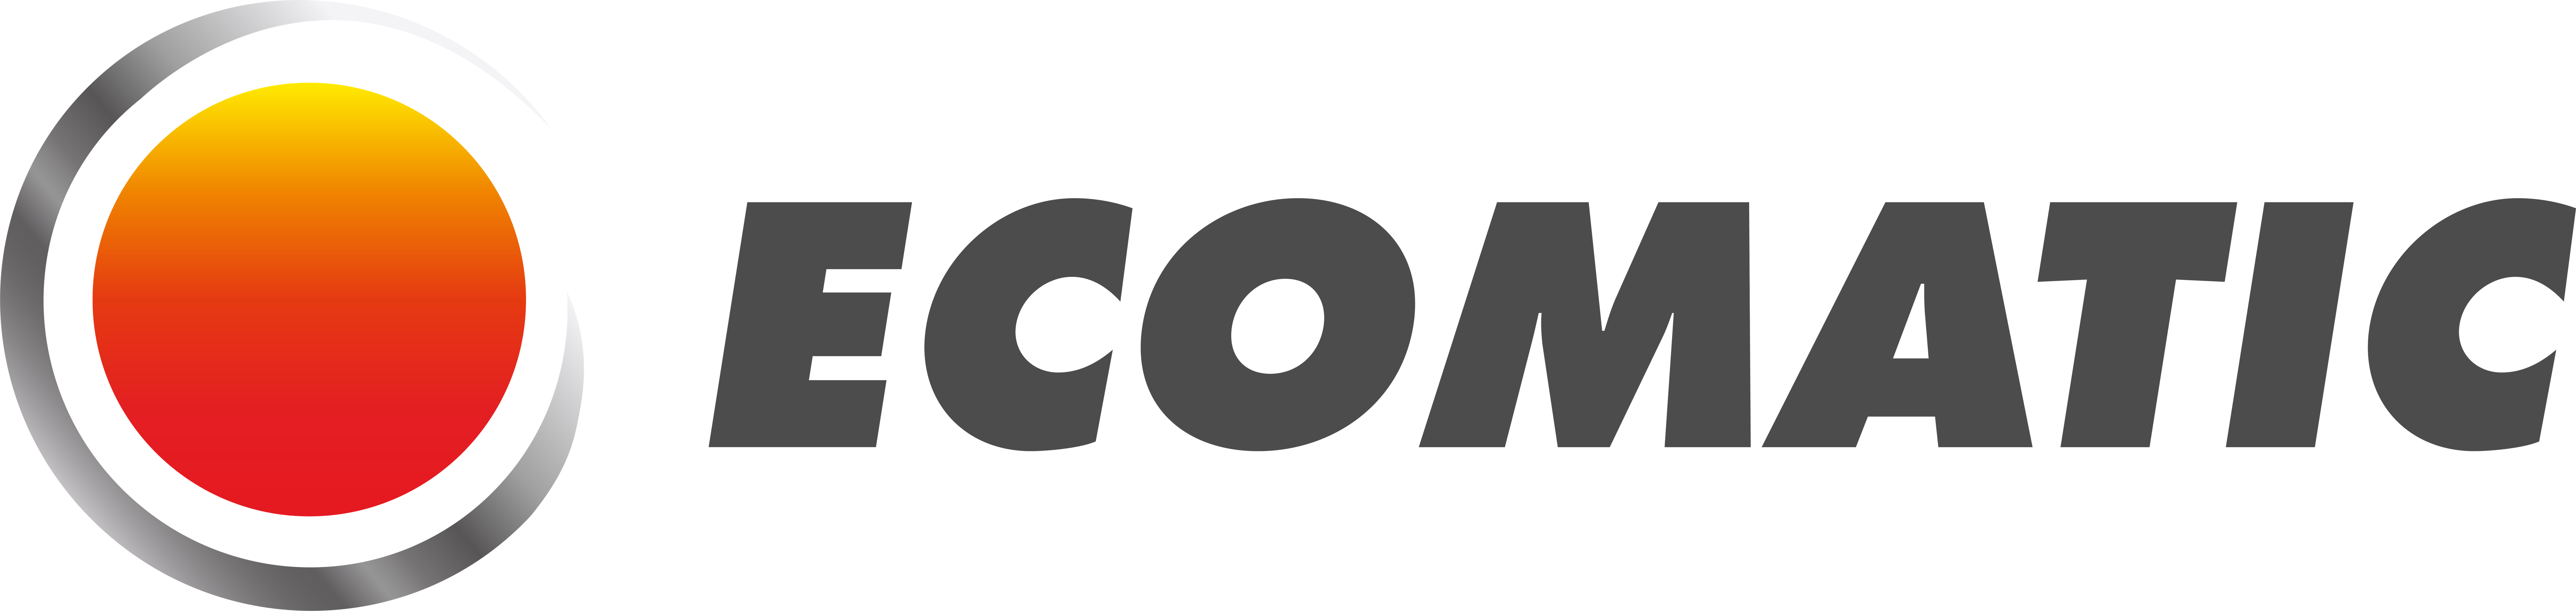 title="ecomatic-logo-2020-darken"